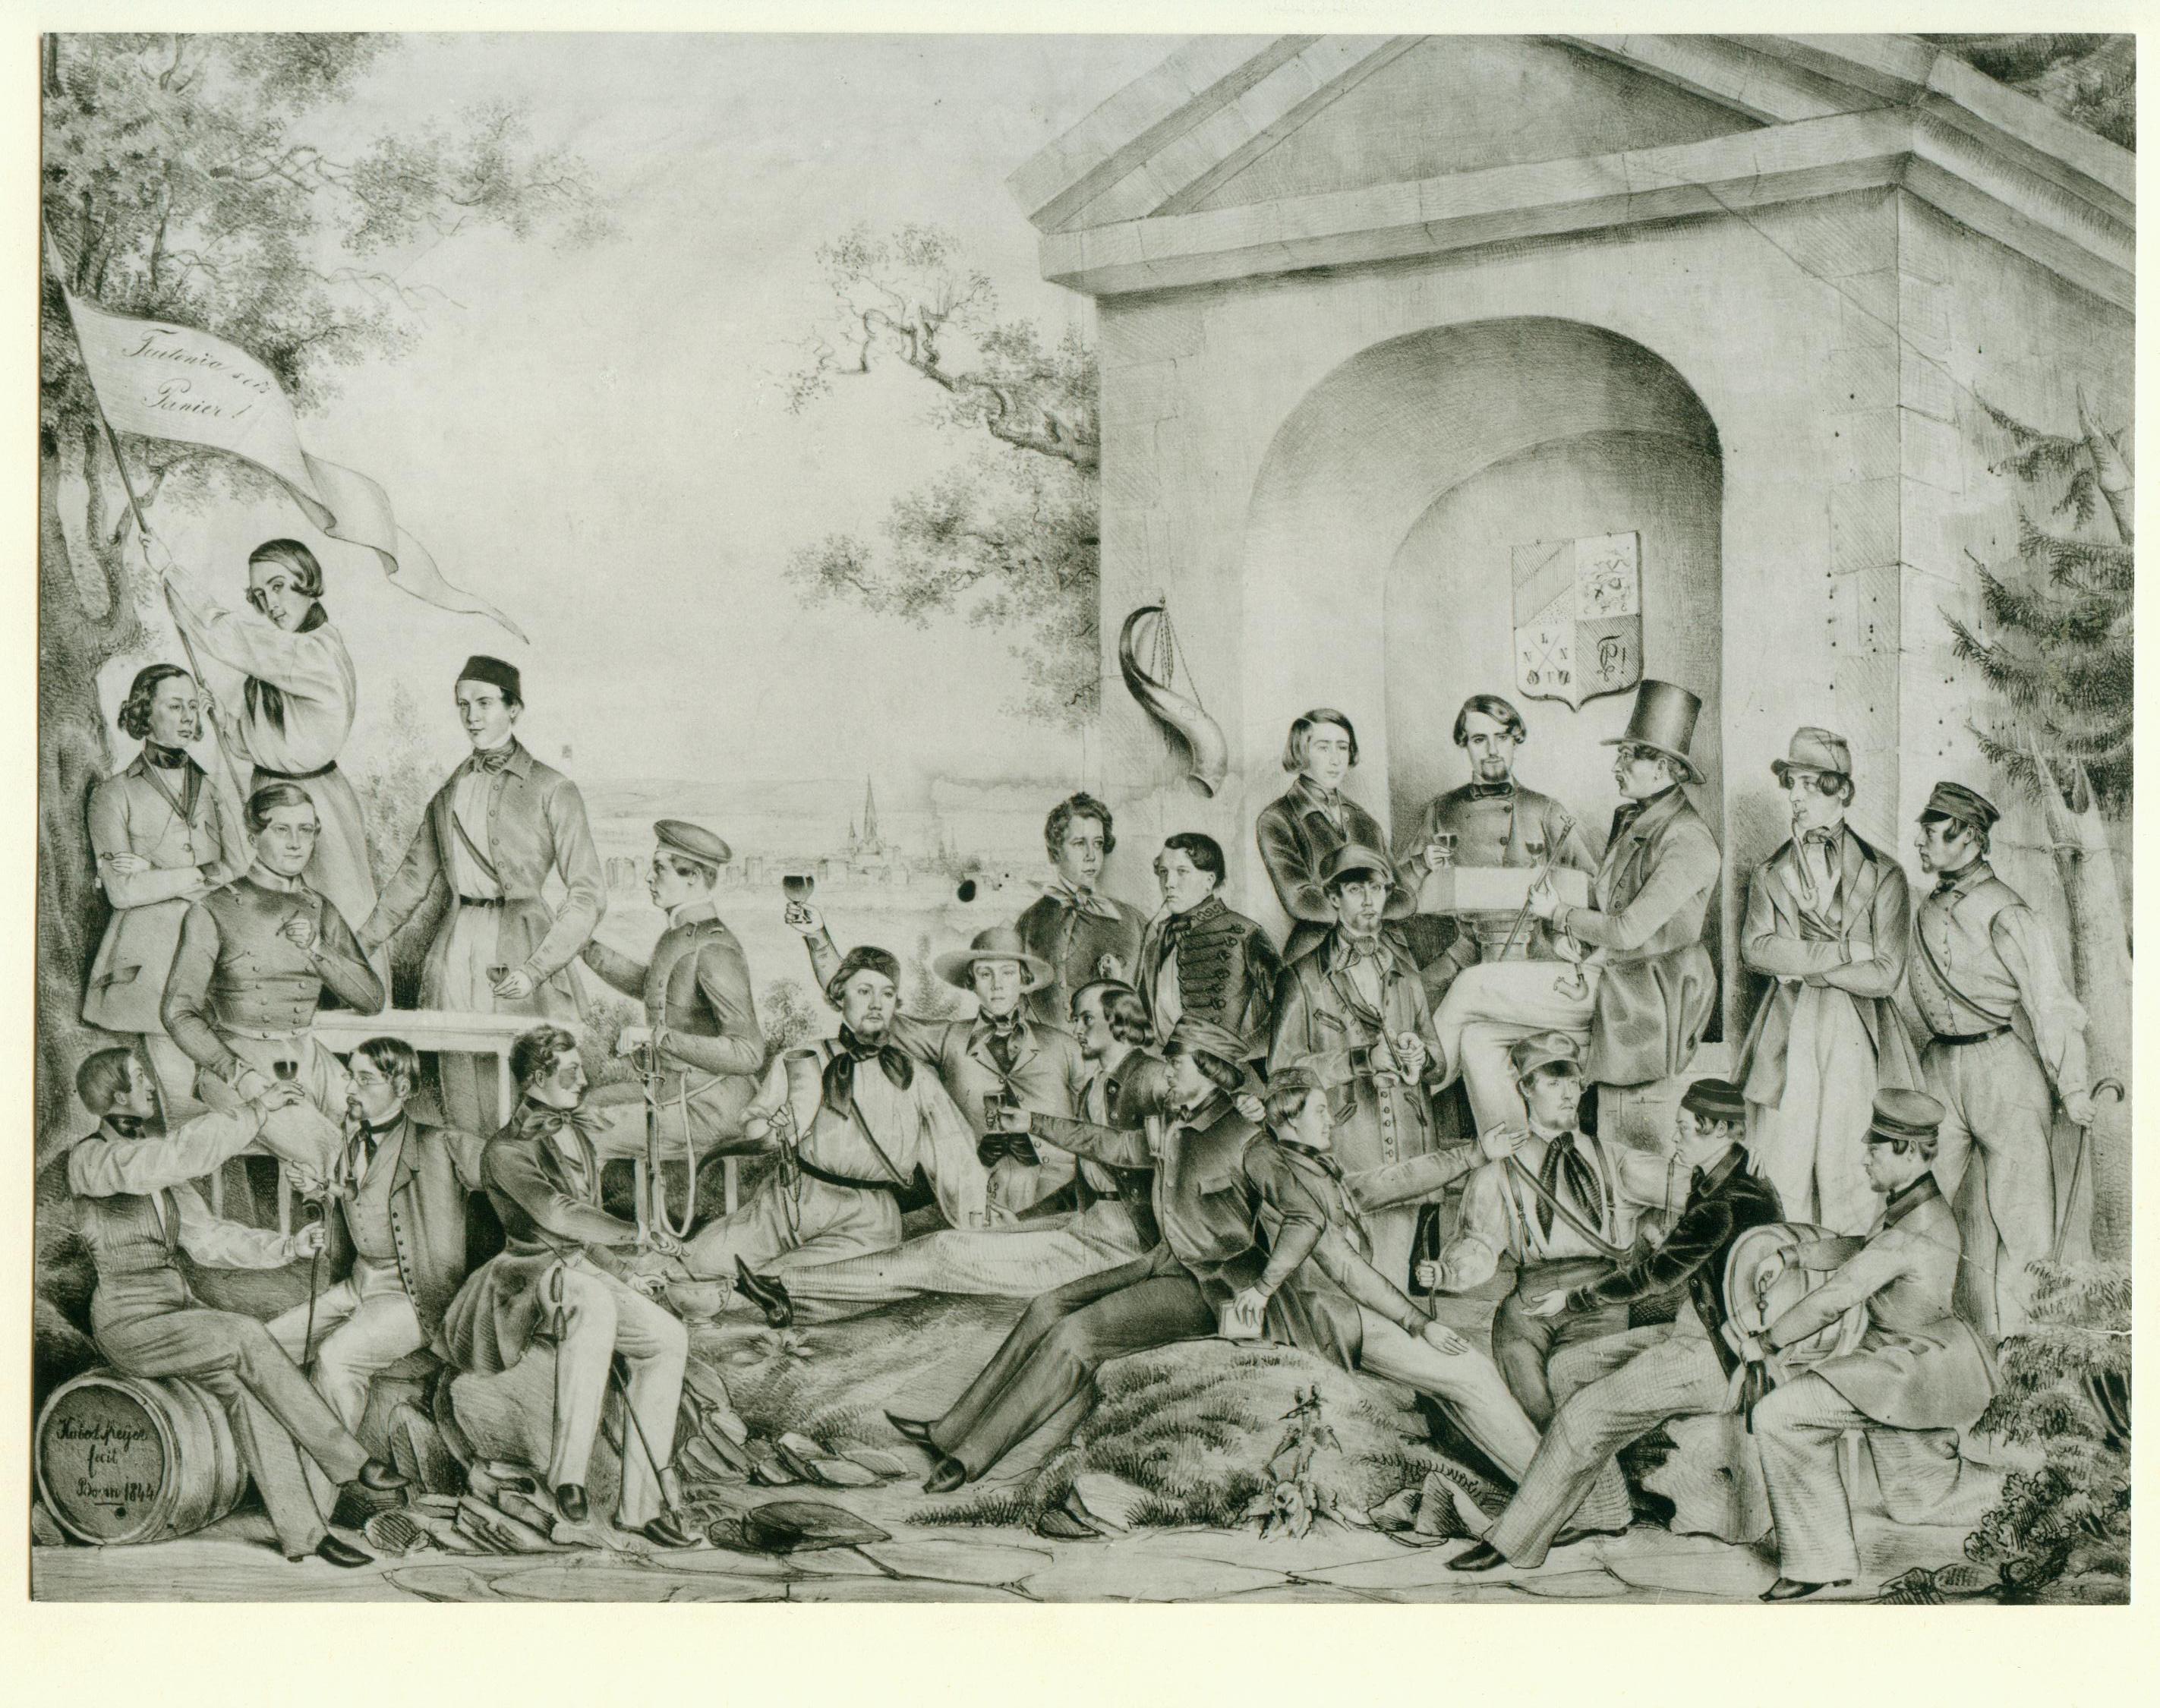 Grndungsbild der Landsmannschaft Teutonia Bonn von 1844